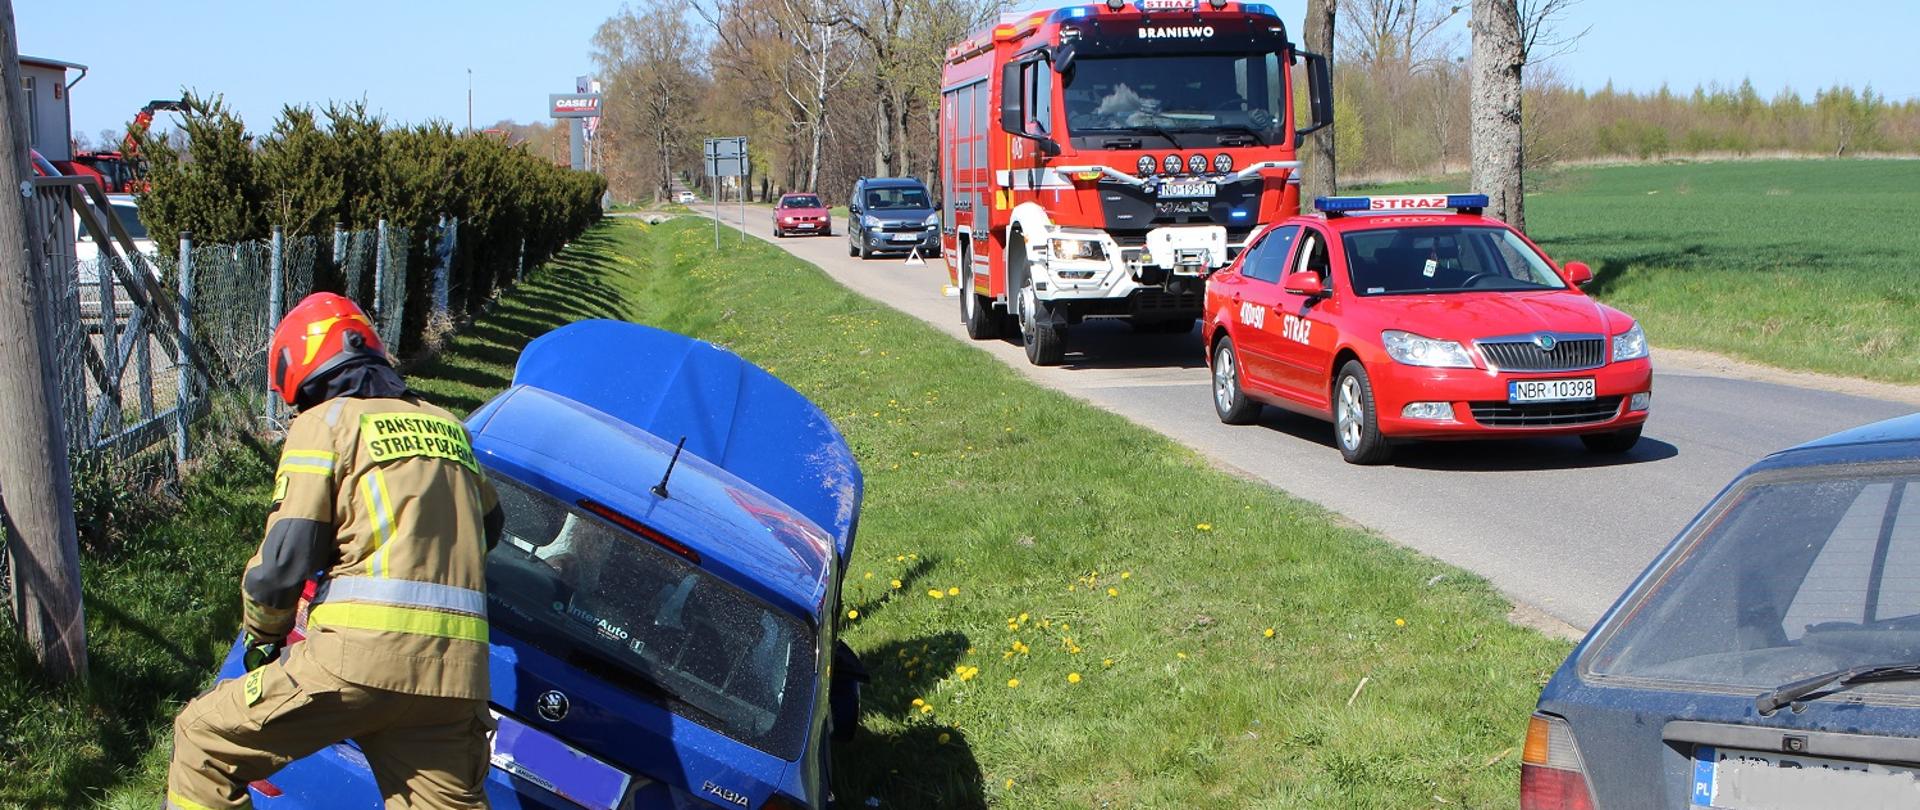 Z lewej strony zdjęcia na zielonym poboczu drogi stoi niebieskie auto przy nim strażak. Z prawej na drodze ustawione dwa samochody strażackie, czerwone.